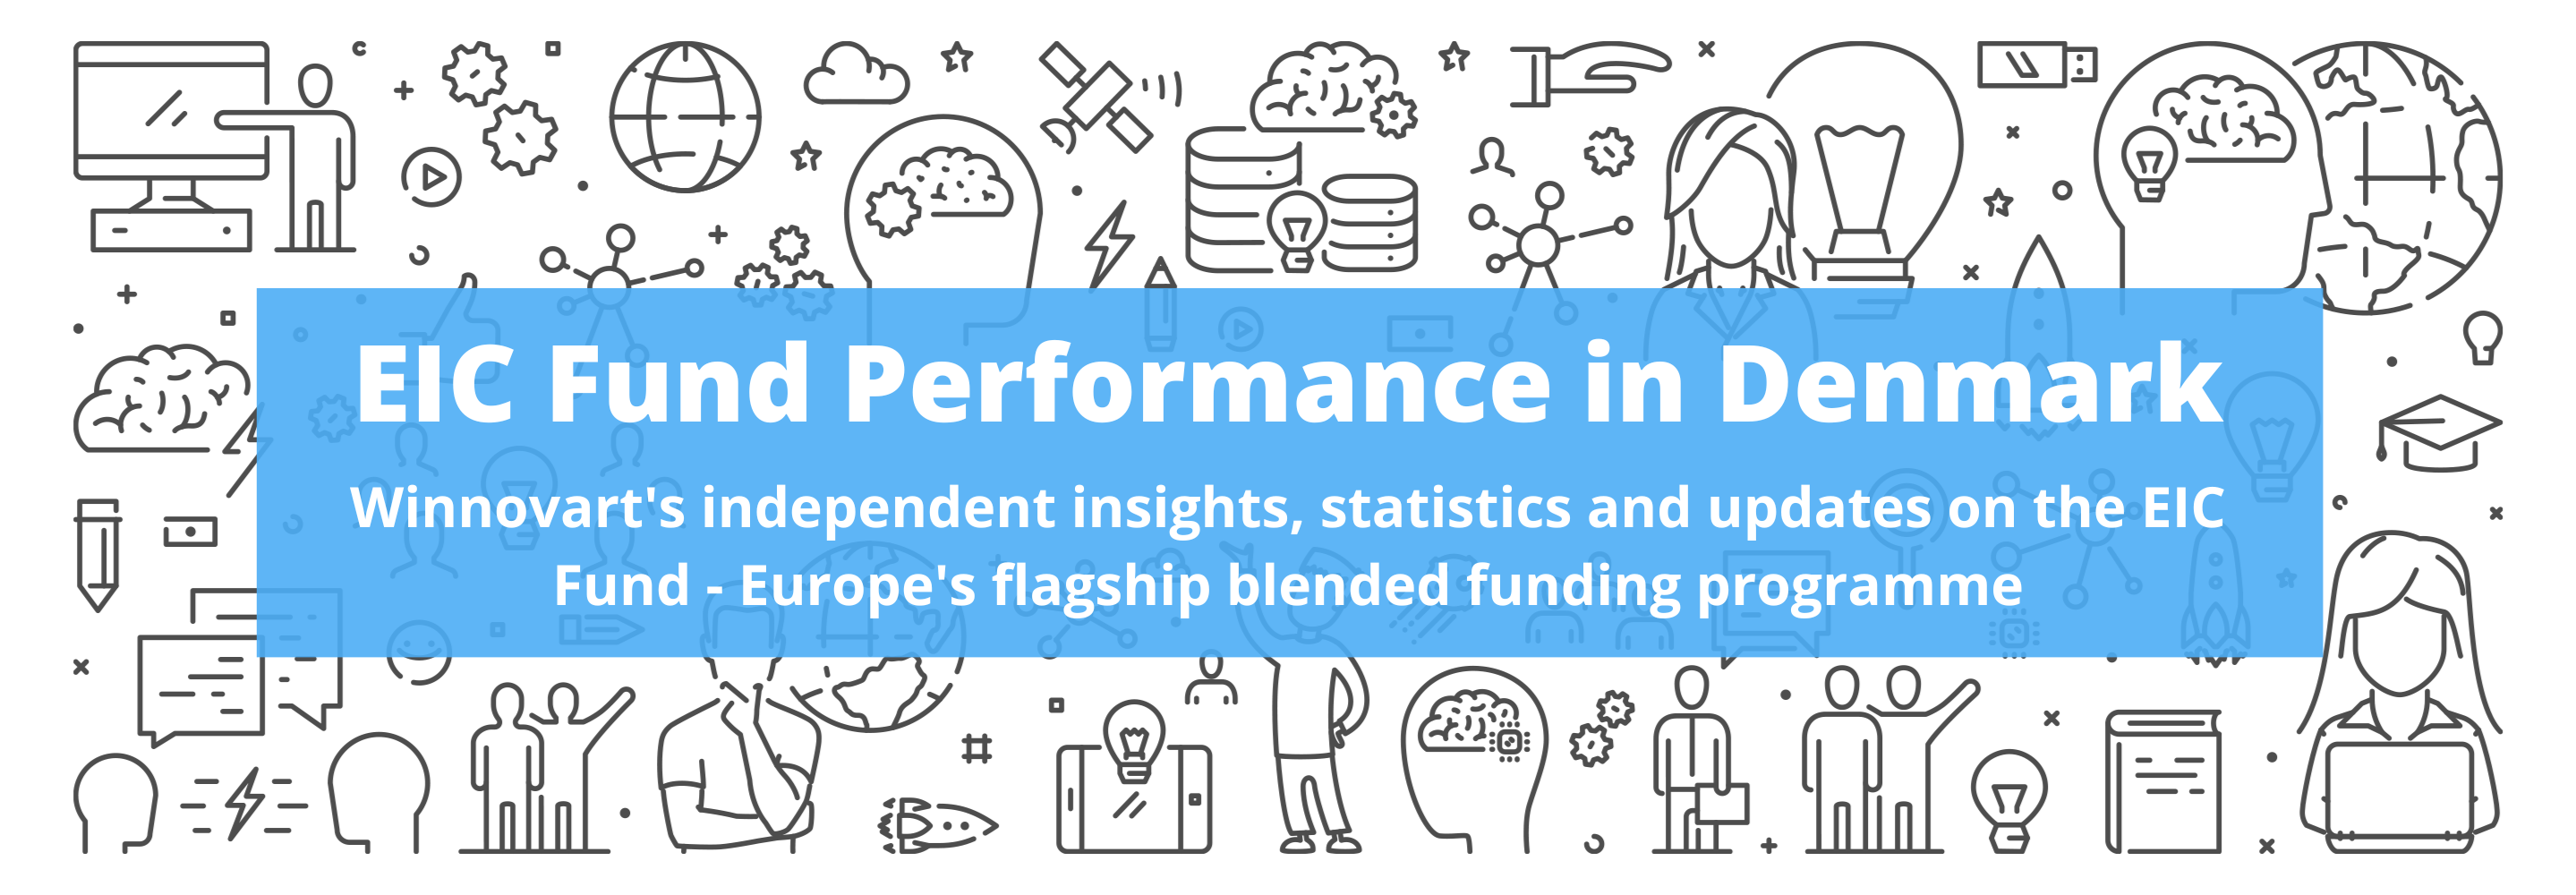 EIC Fund Performance in Denmark